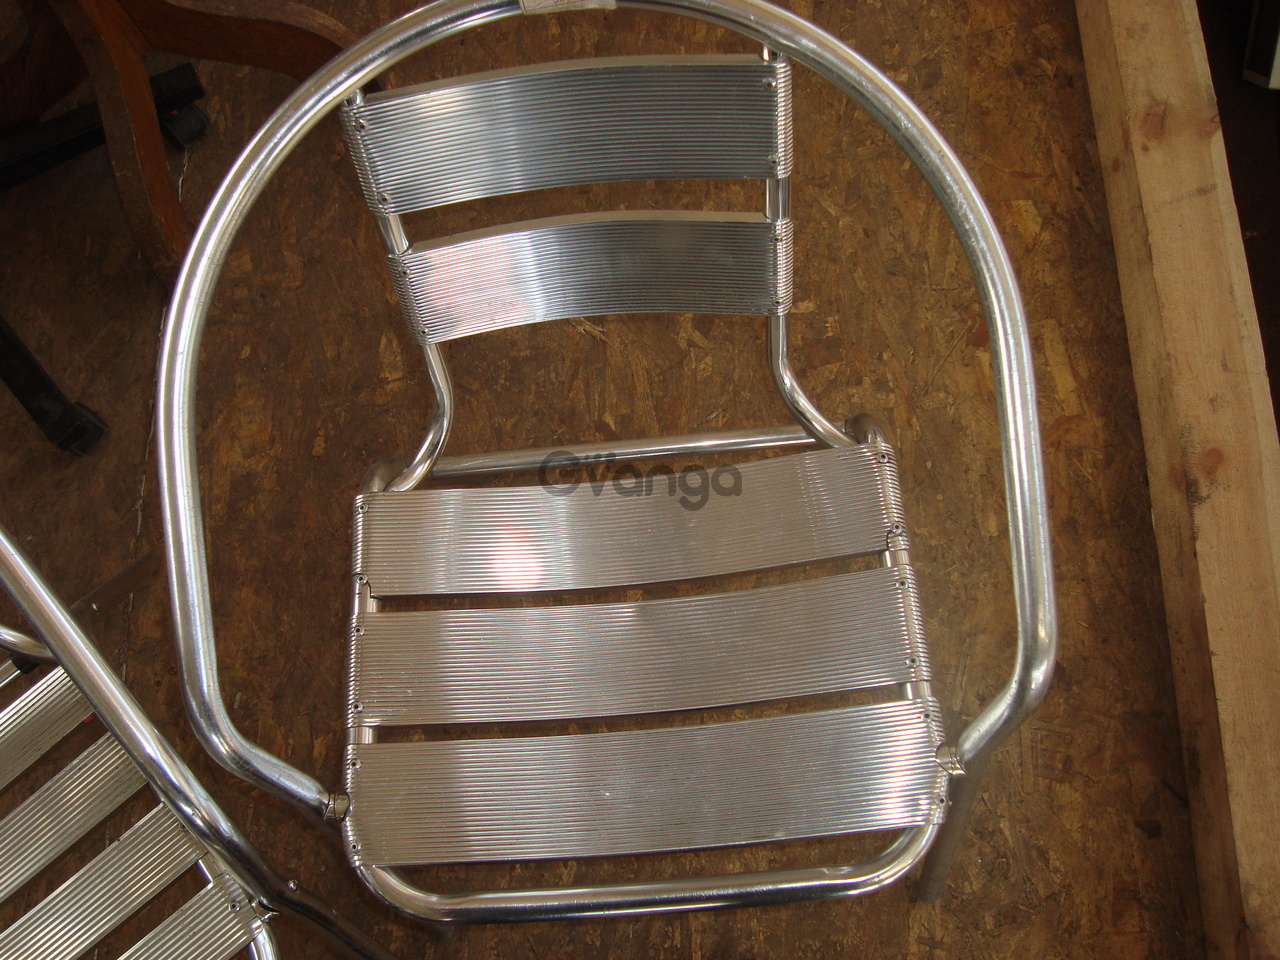 Сломался алюминиевый стул